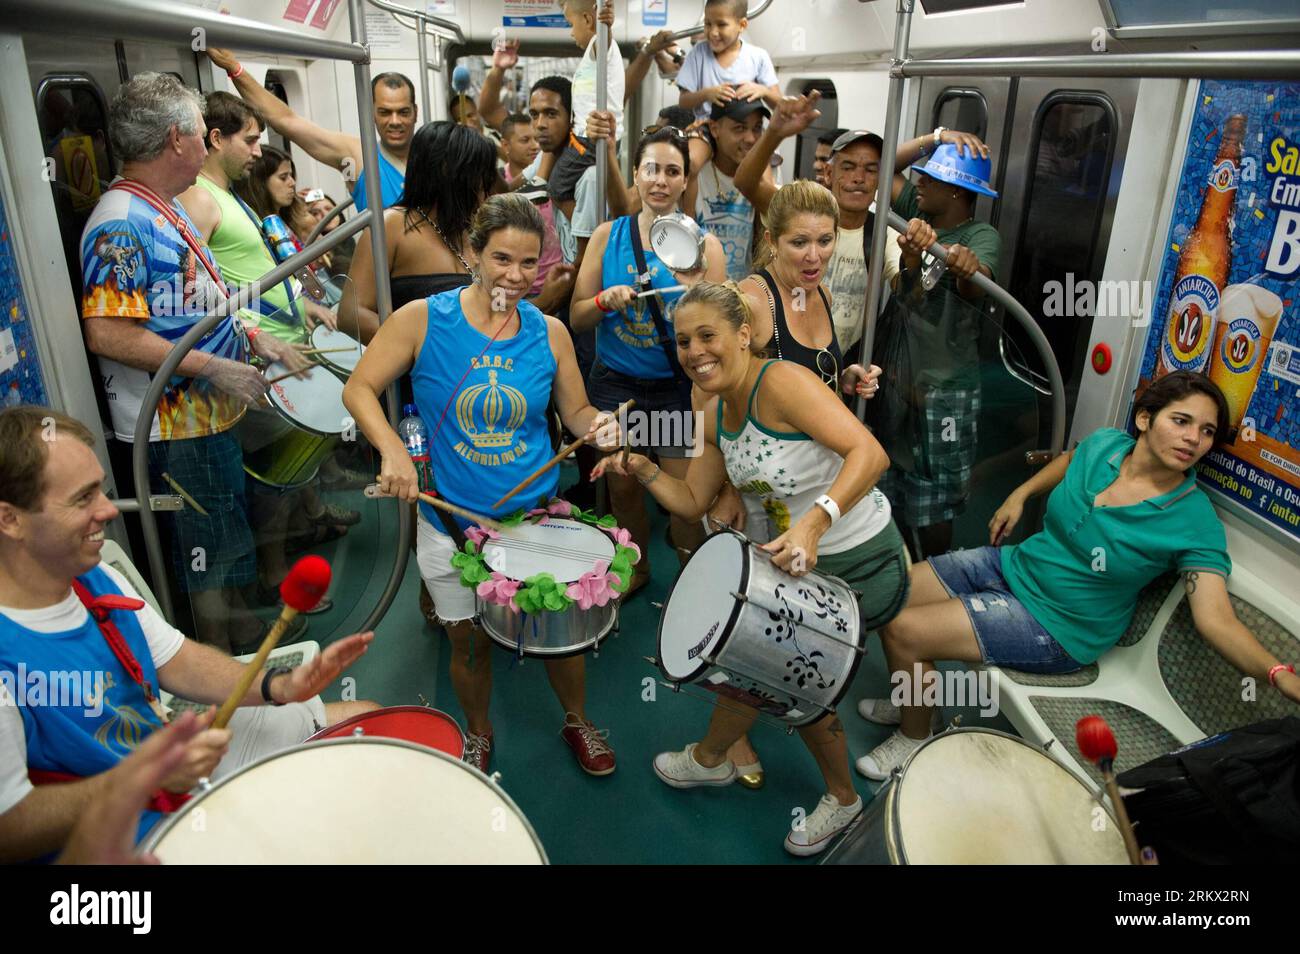 Bildnummer: 58860517 Datum: 01.12.2012 Copyright: imago/Xinhua RIO DE JANEIRO, 1. Dezember 2012 -- Samba-Musik auf dem Zug von Samba in Rio de Janeiro, 1. Dezember 2012. Der 2. Dezember ist der Samba-Tag Brasiliens. Tausende tanzten auf dem Zug von Samba in Richtung Oswardo Cruz, dem Geburtsort von Samba in Rio de Janeiro. (Xinhua/Weng Xinyang)(rh) BRASILIEN-RIO DE JANEIRO-ZUG VON SAMBA PUBLICATIONxNOTxINxCHN Gesellschaft Land Leute Tanz tanzen Trommler Samba Ubahn U Bahn x0x 2012 quer Premiere 58860517 Datum 01 12 2012 Copyright Imago XINHUA Rio de Janeiro DEZ 1 2012 Spielen Sie Samba Music ON Stockfoto